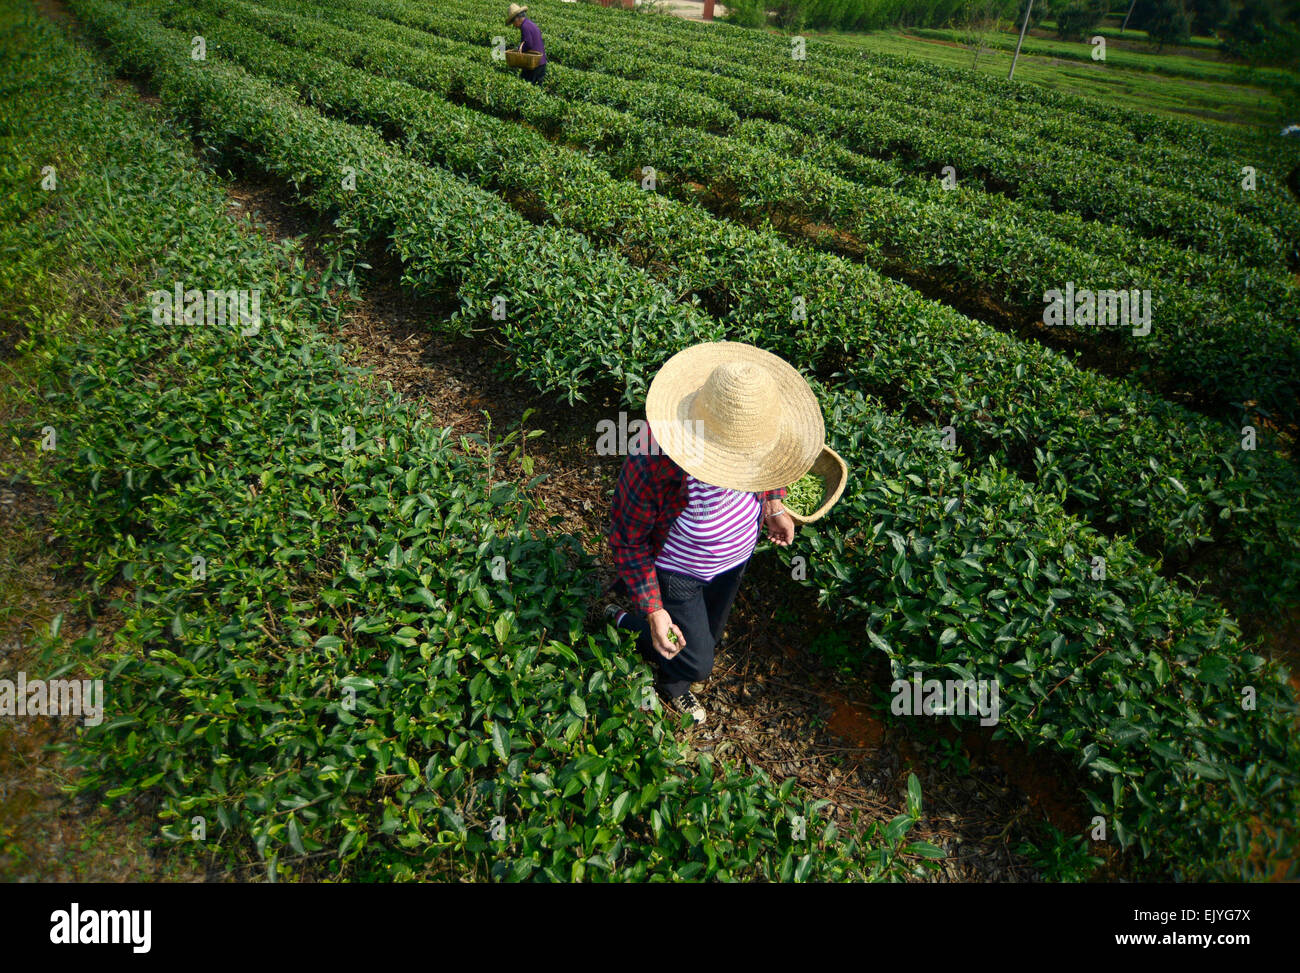 Shanghai, Chine, province du Hunan. 3ème apr 2015. Un plateau agriculteur ramasse feuilles de thé fraîches à Huatang Canton de Chenzhou City, province du Hunan en Chine centrale, le 3 avril 2015. Plateau les agriculteurs sont occupés à ramasser les feuilles de thé avant le Festival Qingming, qui tombe le 5 avril cette année, comme le plateau de cette période de temps est considéré d'avoir un meilleur goût. Crédit : Li Ke/Xinhua/Alamy Live News Banque D'Images